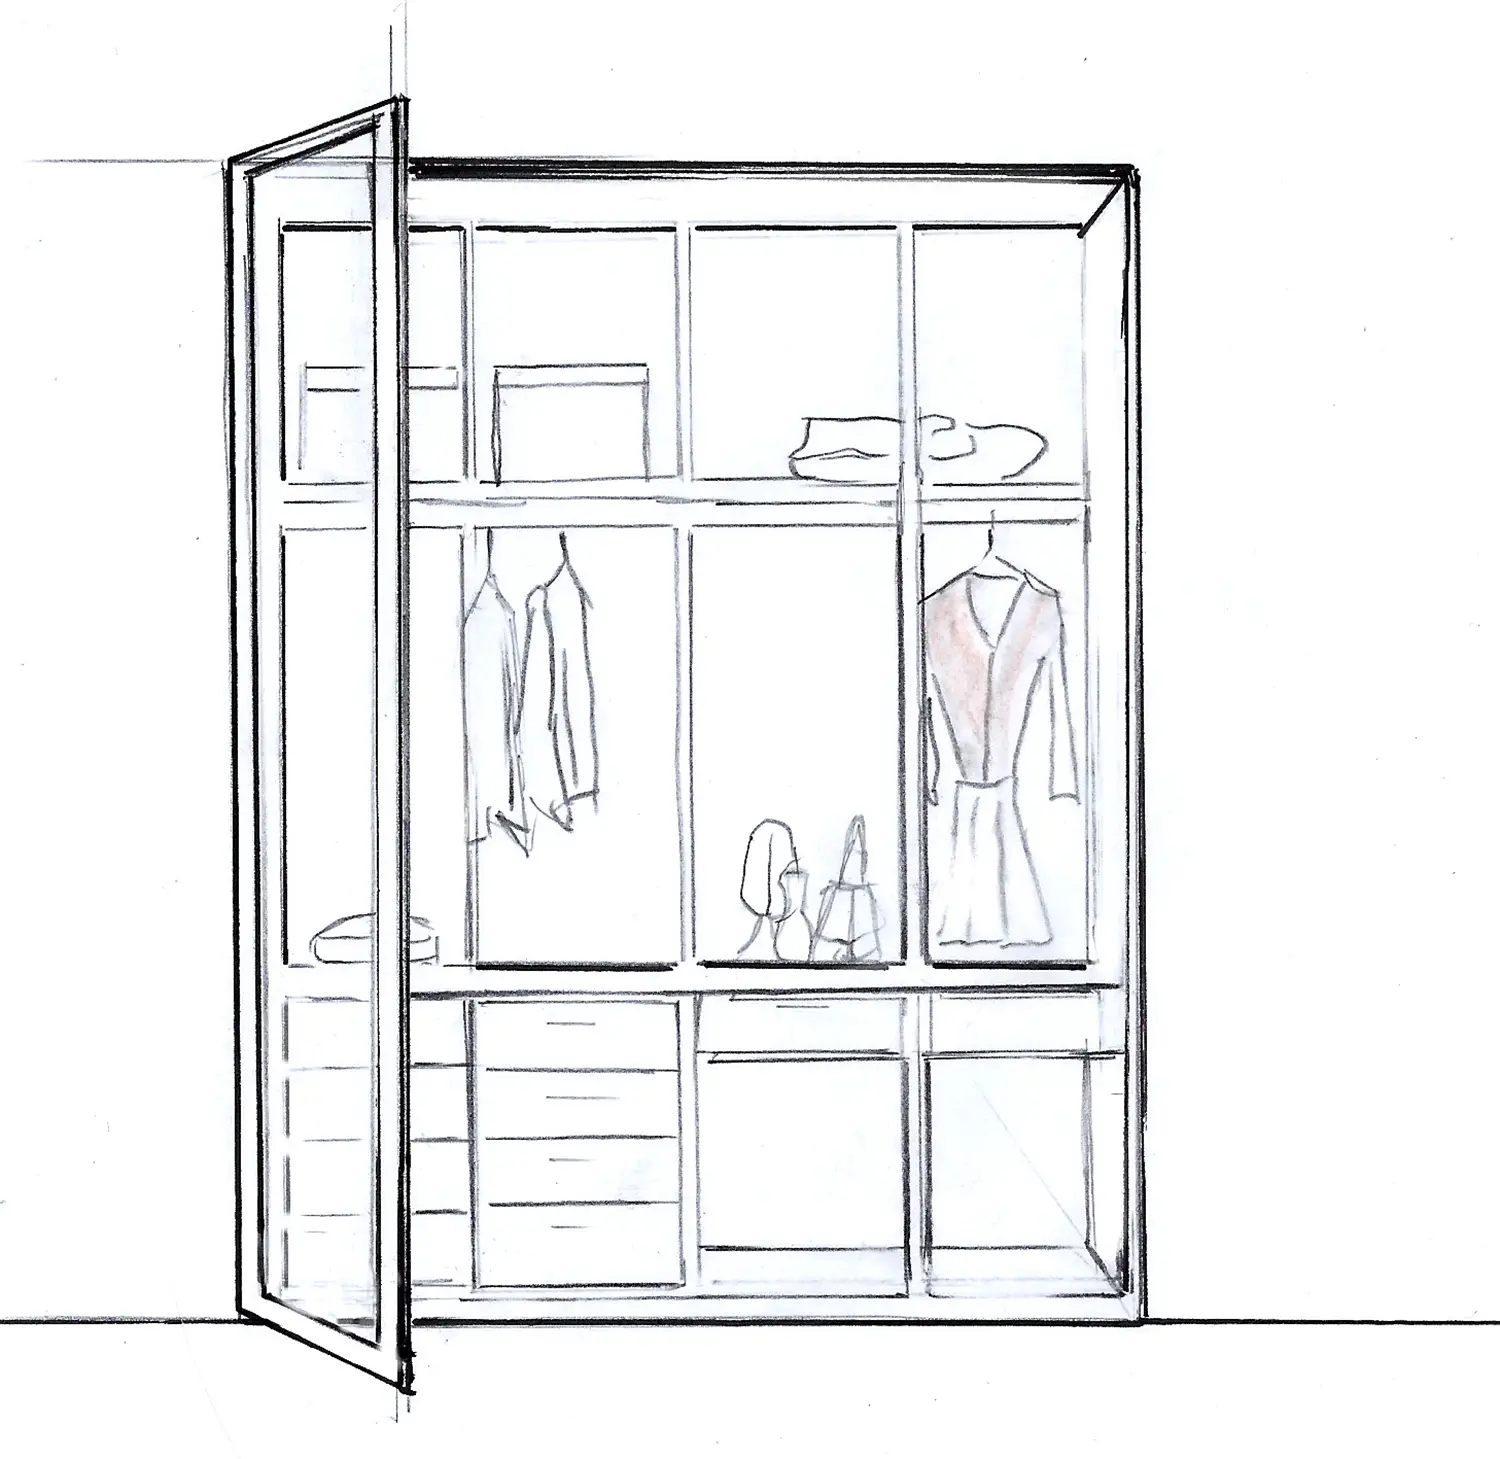 Schizzo in 2D di una cabina armadio progettata dall'interior designer Stefania Luraghi.